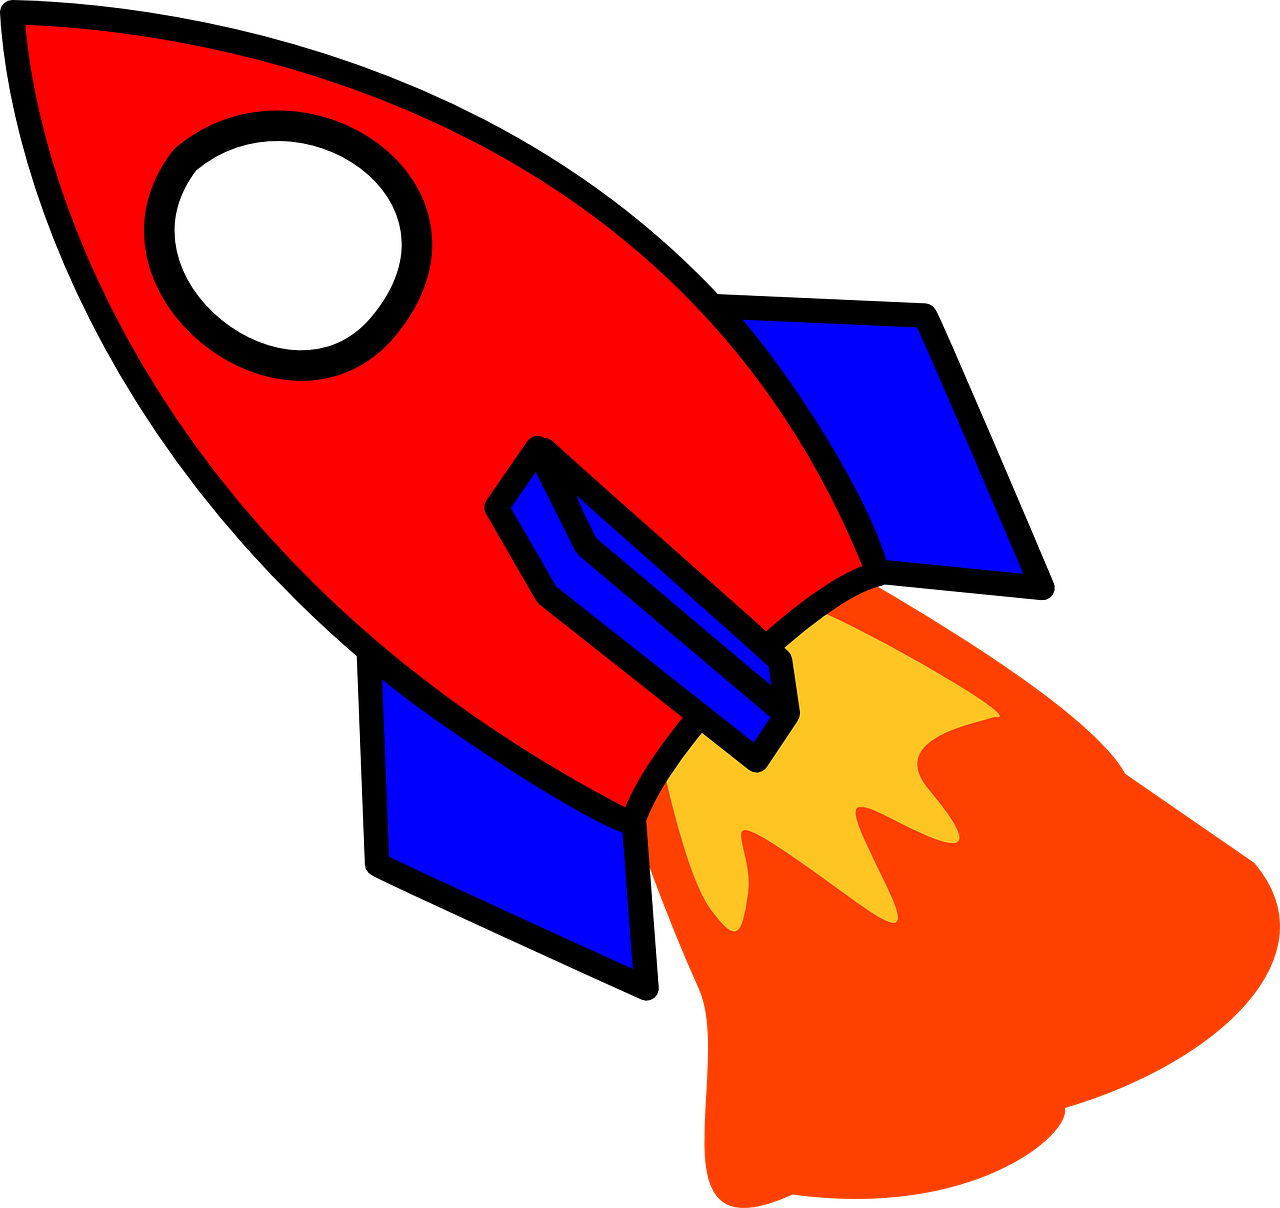 Картинка ракеты для детей цветная. Ракета для детей. Ракета рисунок. Изображение ракеты для детей. Ракета картинка для детей.